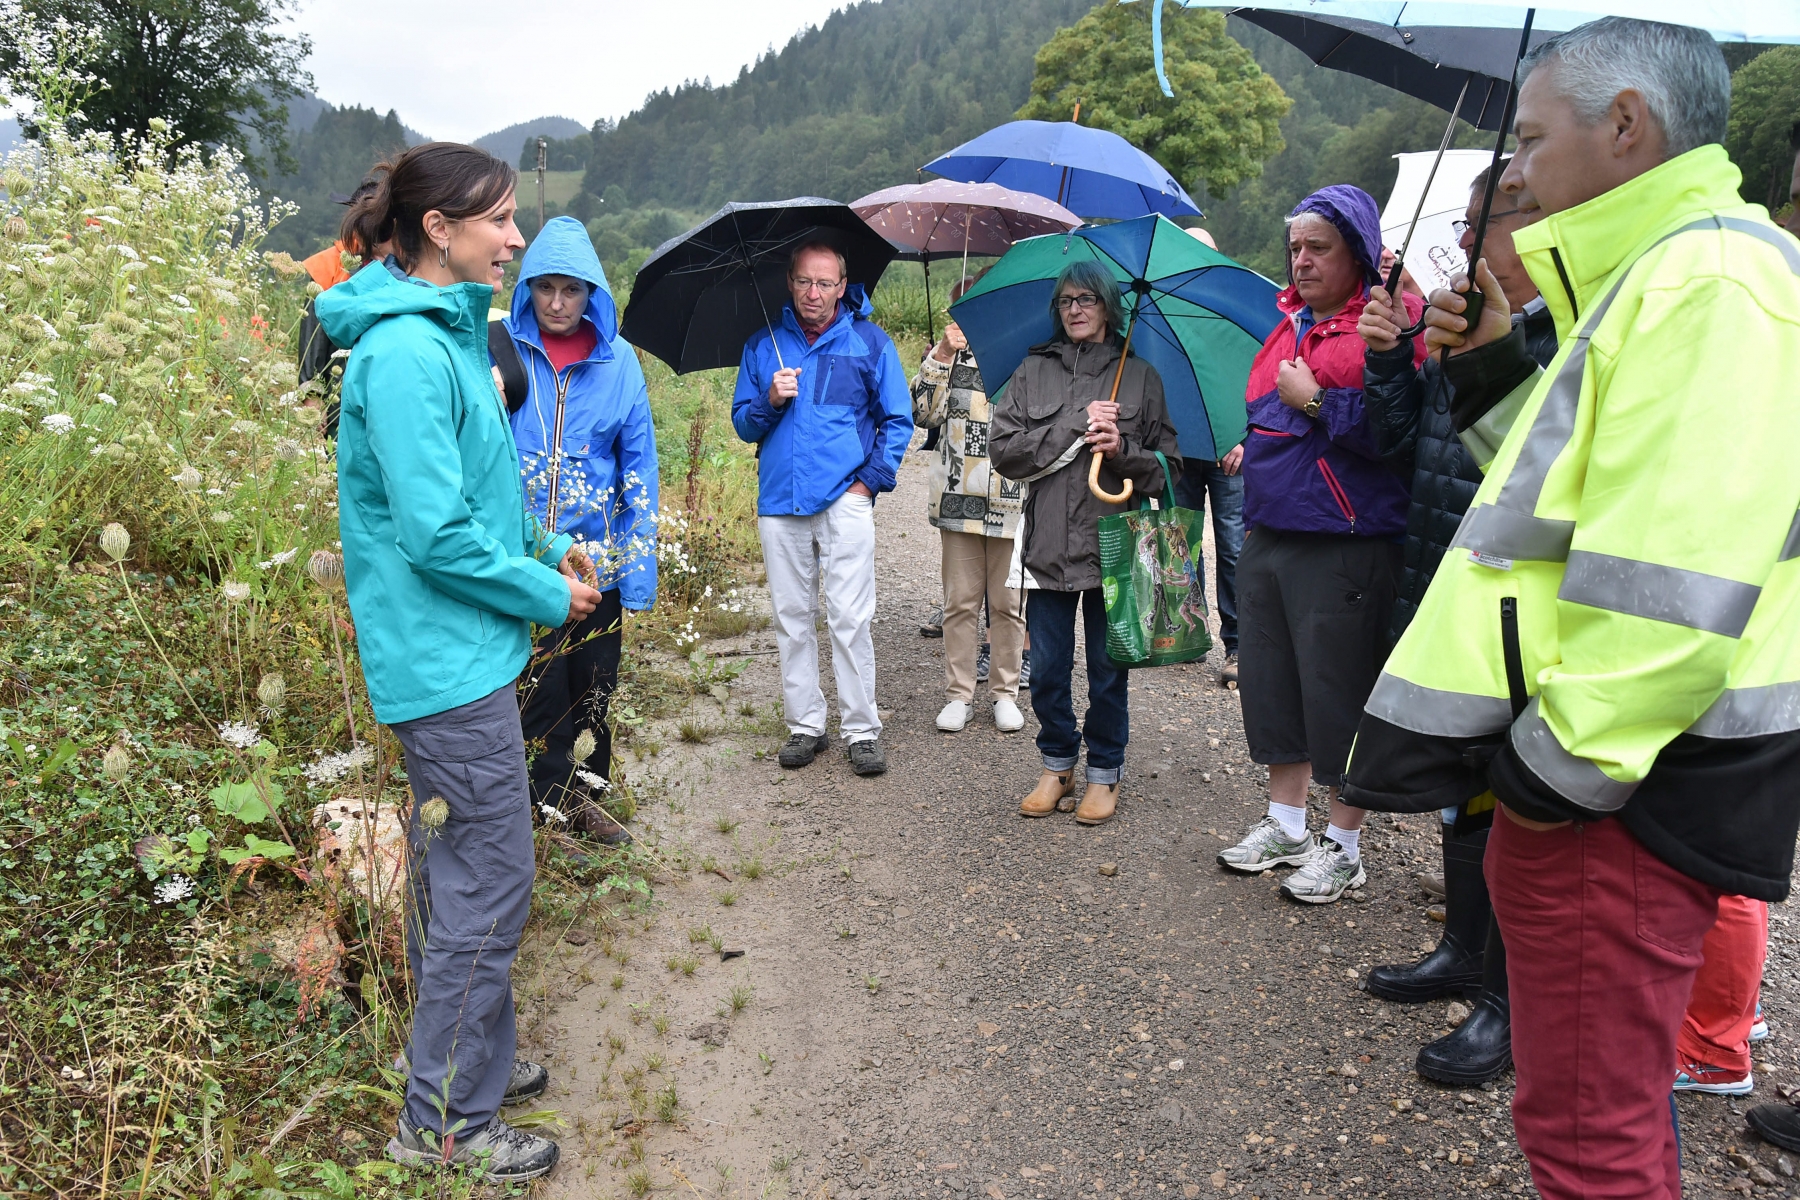 Yannick Storrer, collaboratrice scientifique du Service cantonal de la faune, des forêts et de la nature, a emmené les visiteurs sur le terrain.